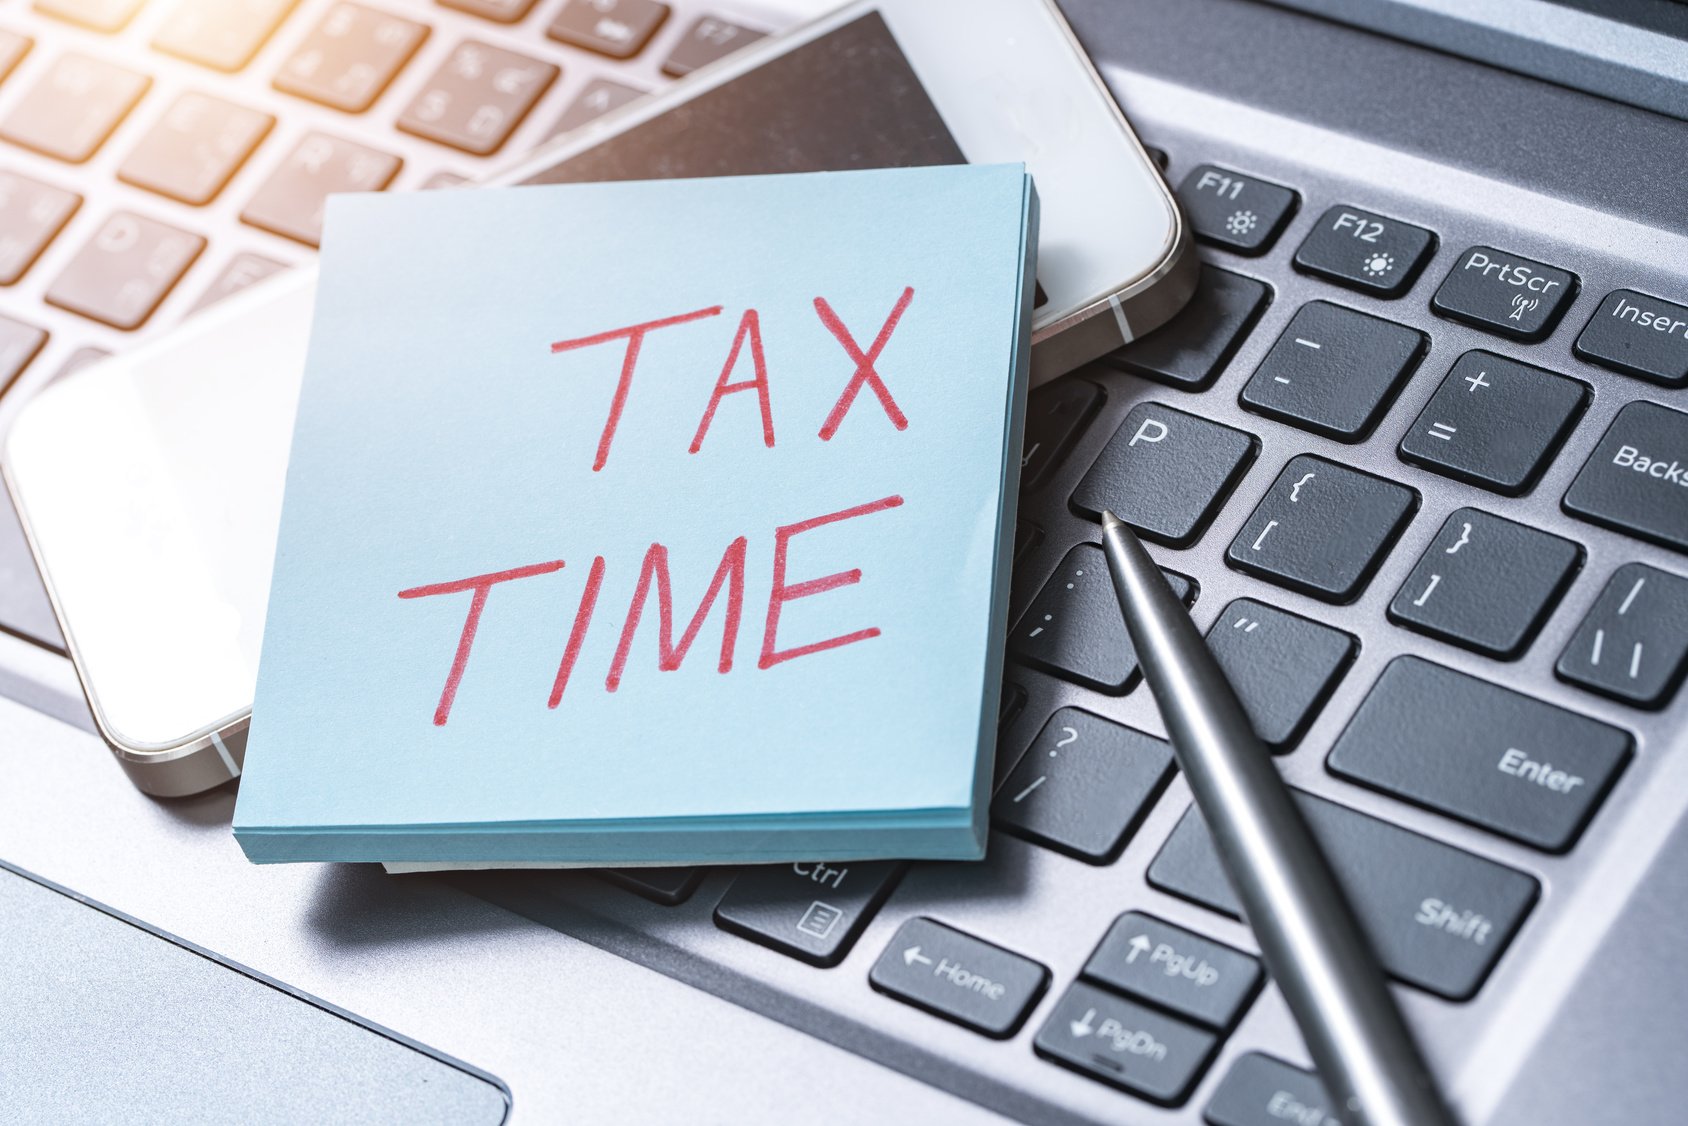 ΑΑΔΕ: Σύσκεψη με φορείς για την υποβολή των φορολογικών δηλώσεων του 2018